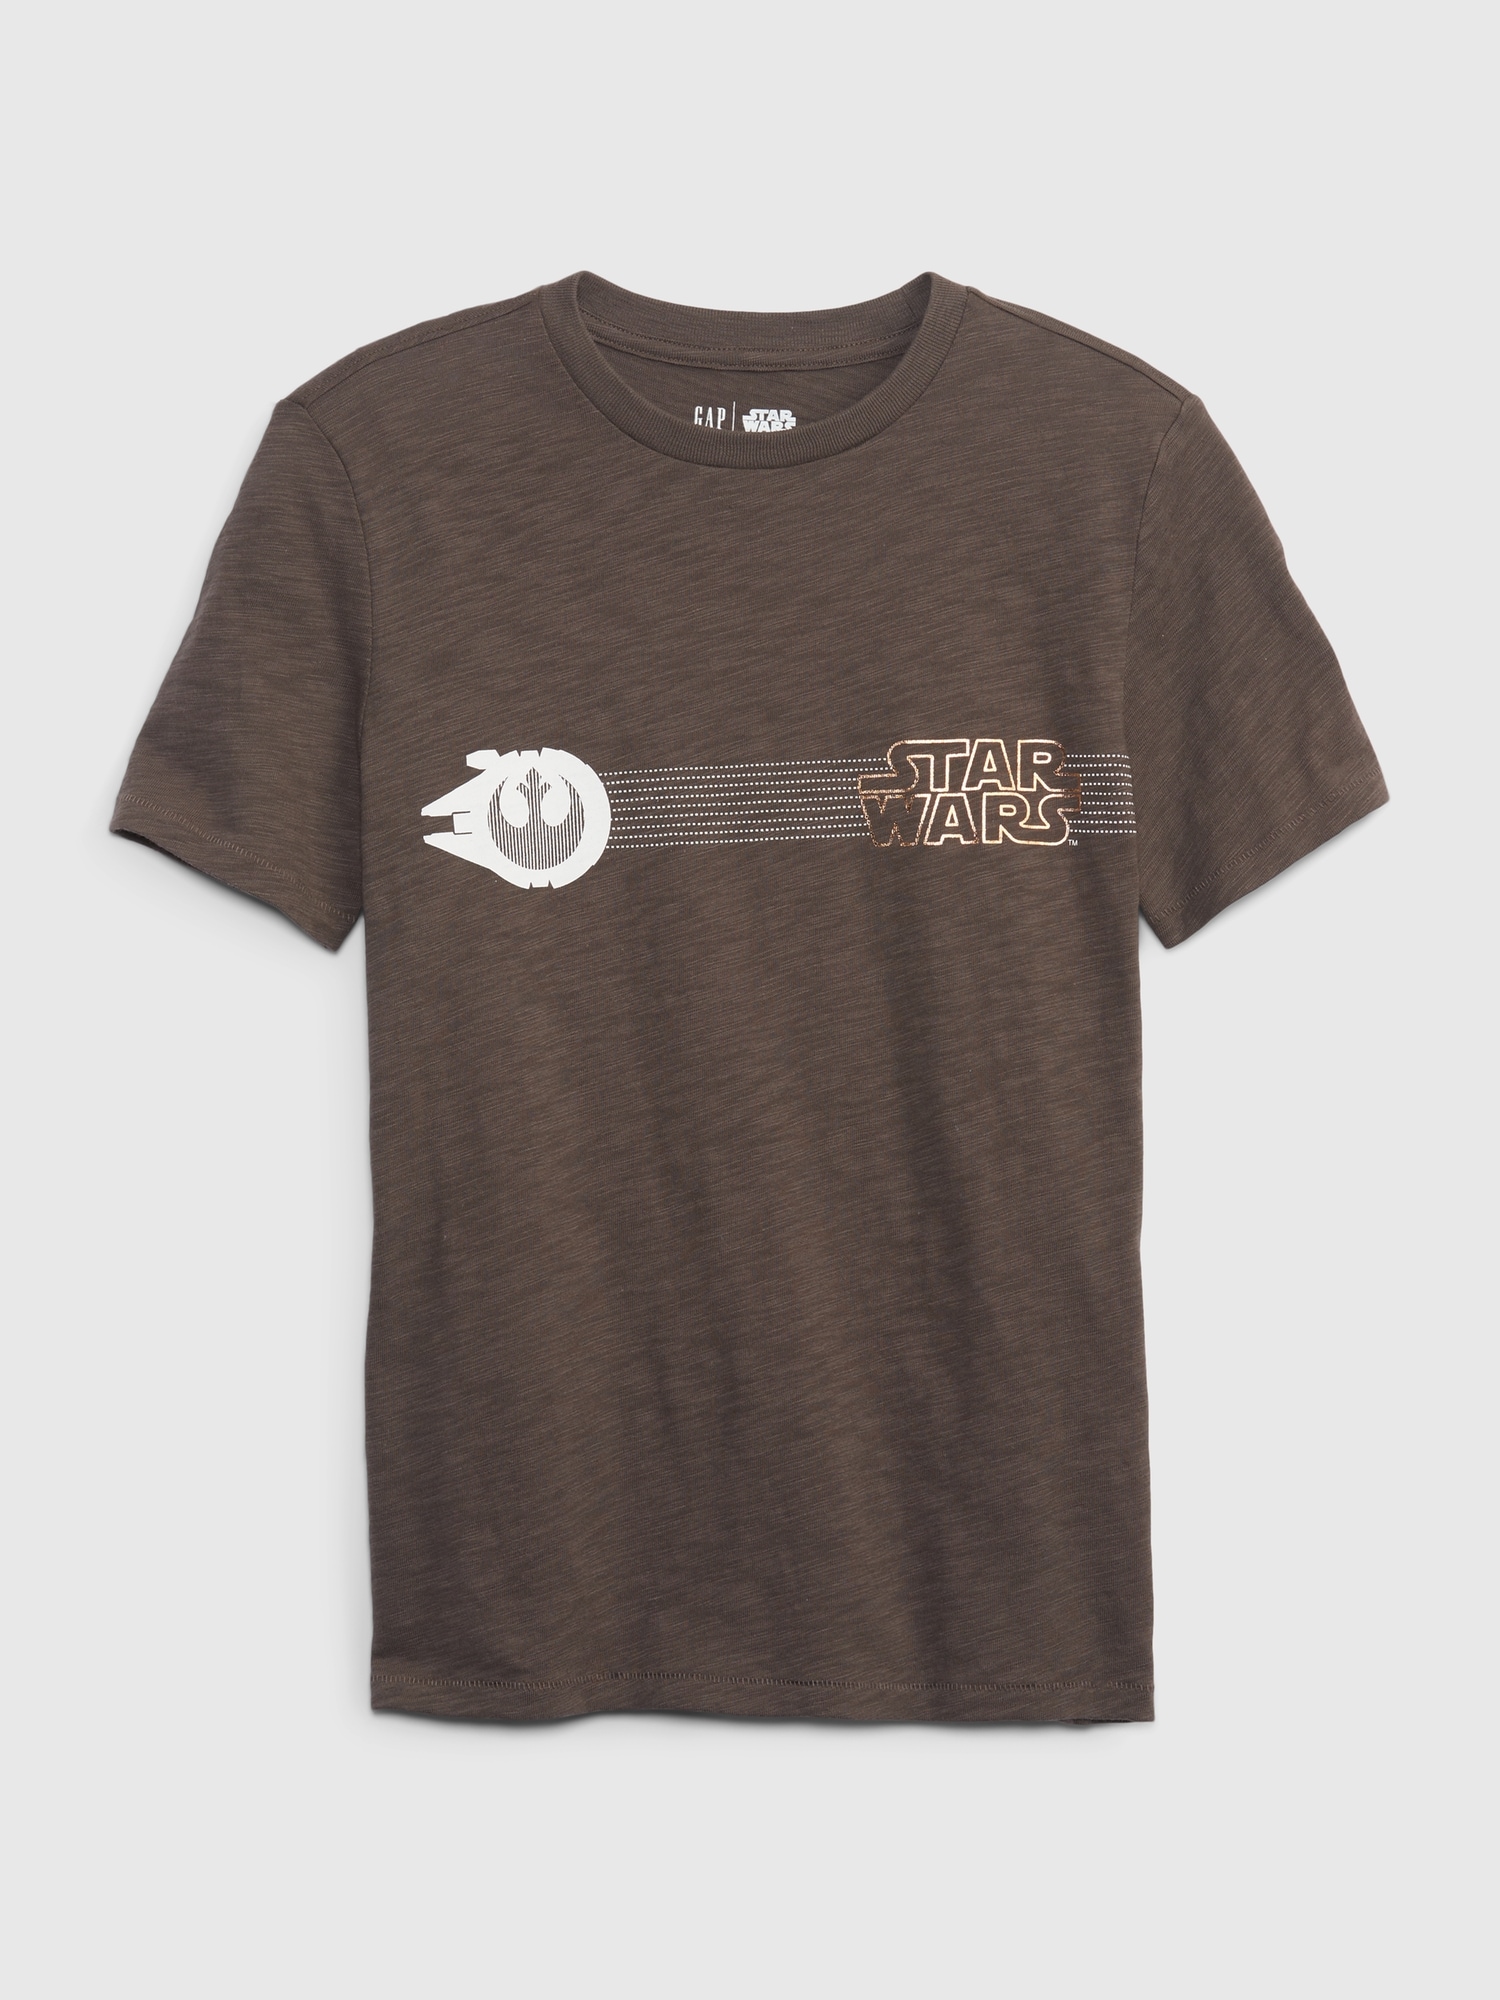 Gapkids スター・ウォーズ™ オーガニックコットン100% インタラクティブ グラフィック Tシャツ